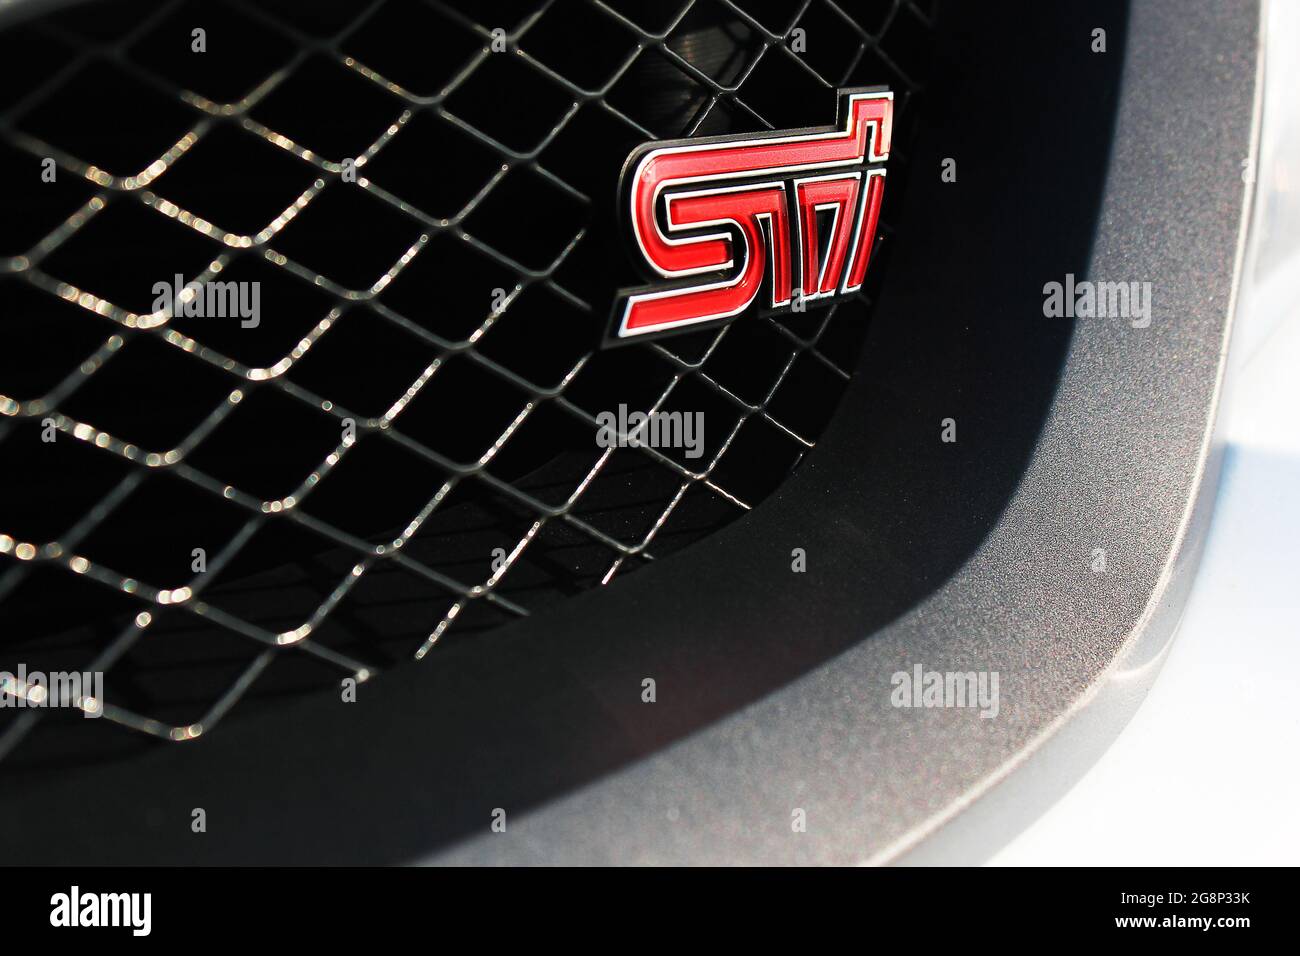 Kiev, Ukraine - March 25, 2015: Subaru Impreza WRX STI. Emblem STI Stock Photo